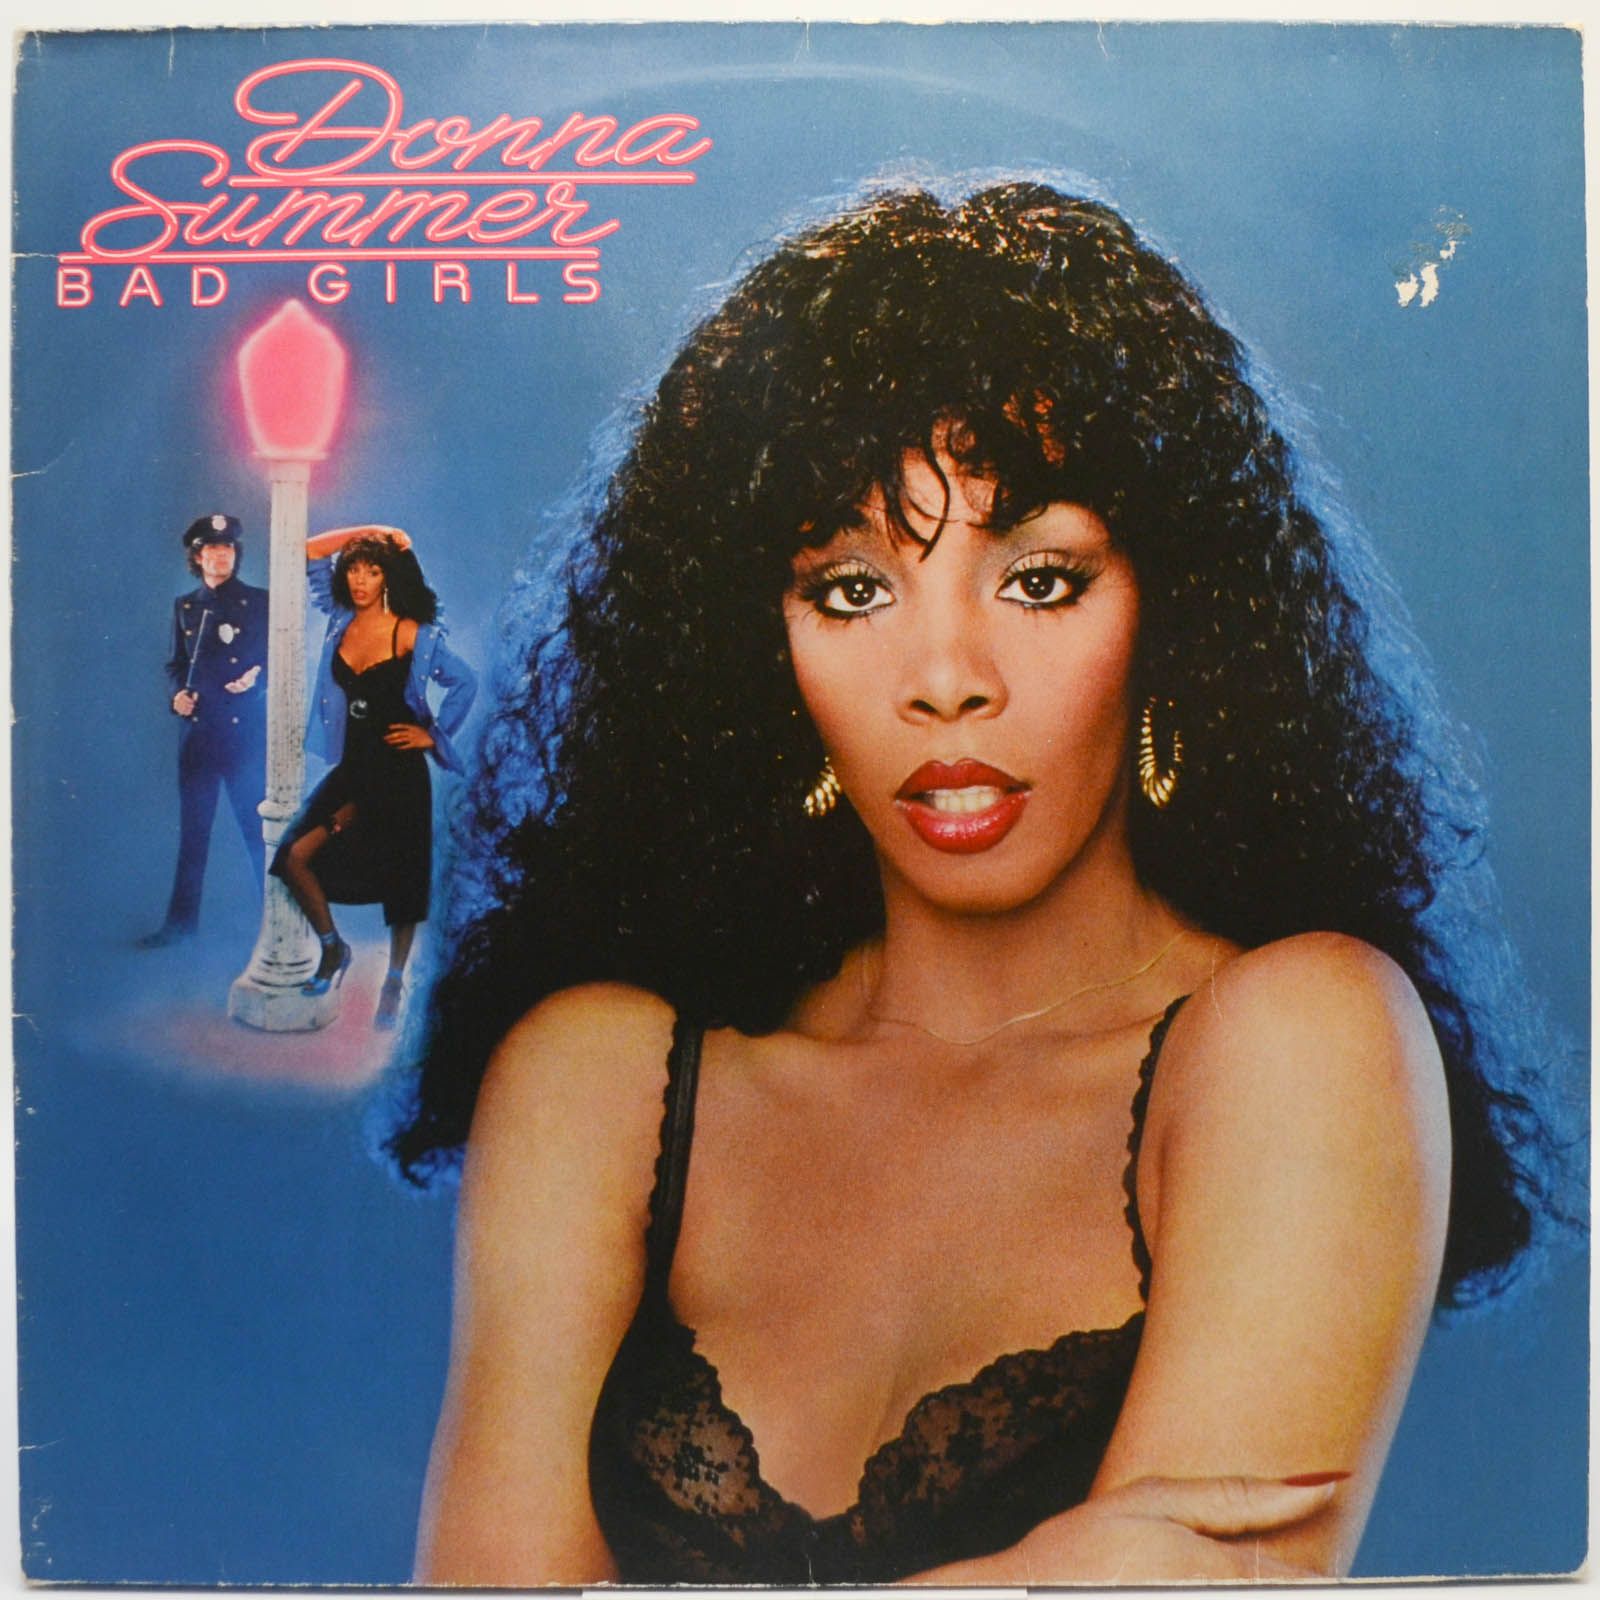 Donna Summer — Bad Girls (2LP), 1979